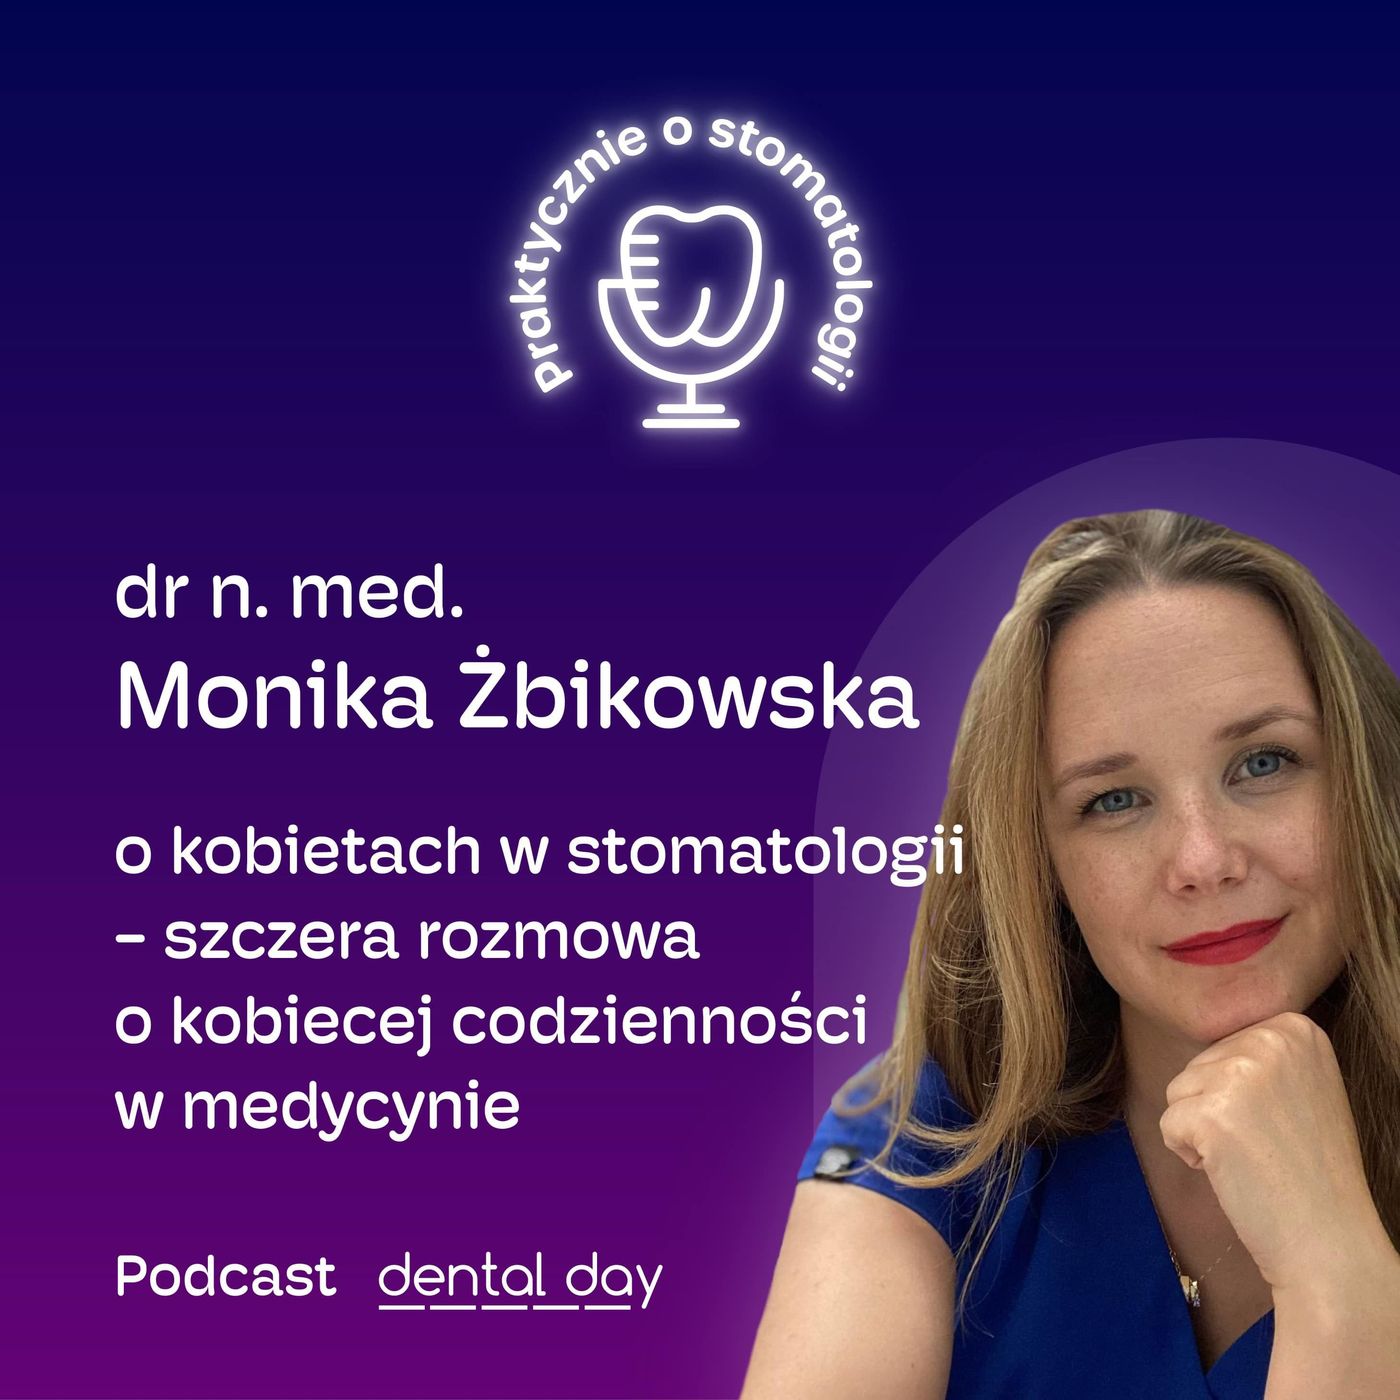 dr n. med. Monika Żbikowska: o kobietach w stomatologii - szczera rozmowa o kobiecej codzienności w medycynie